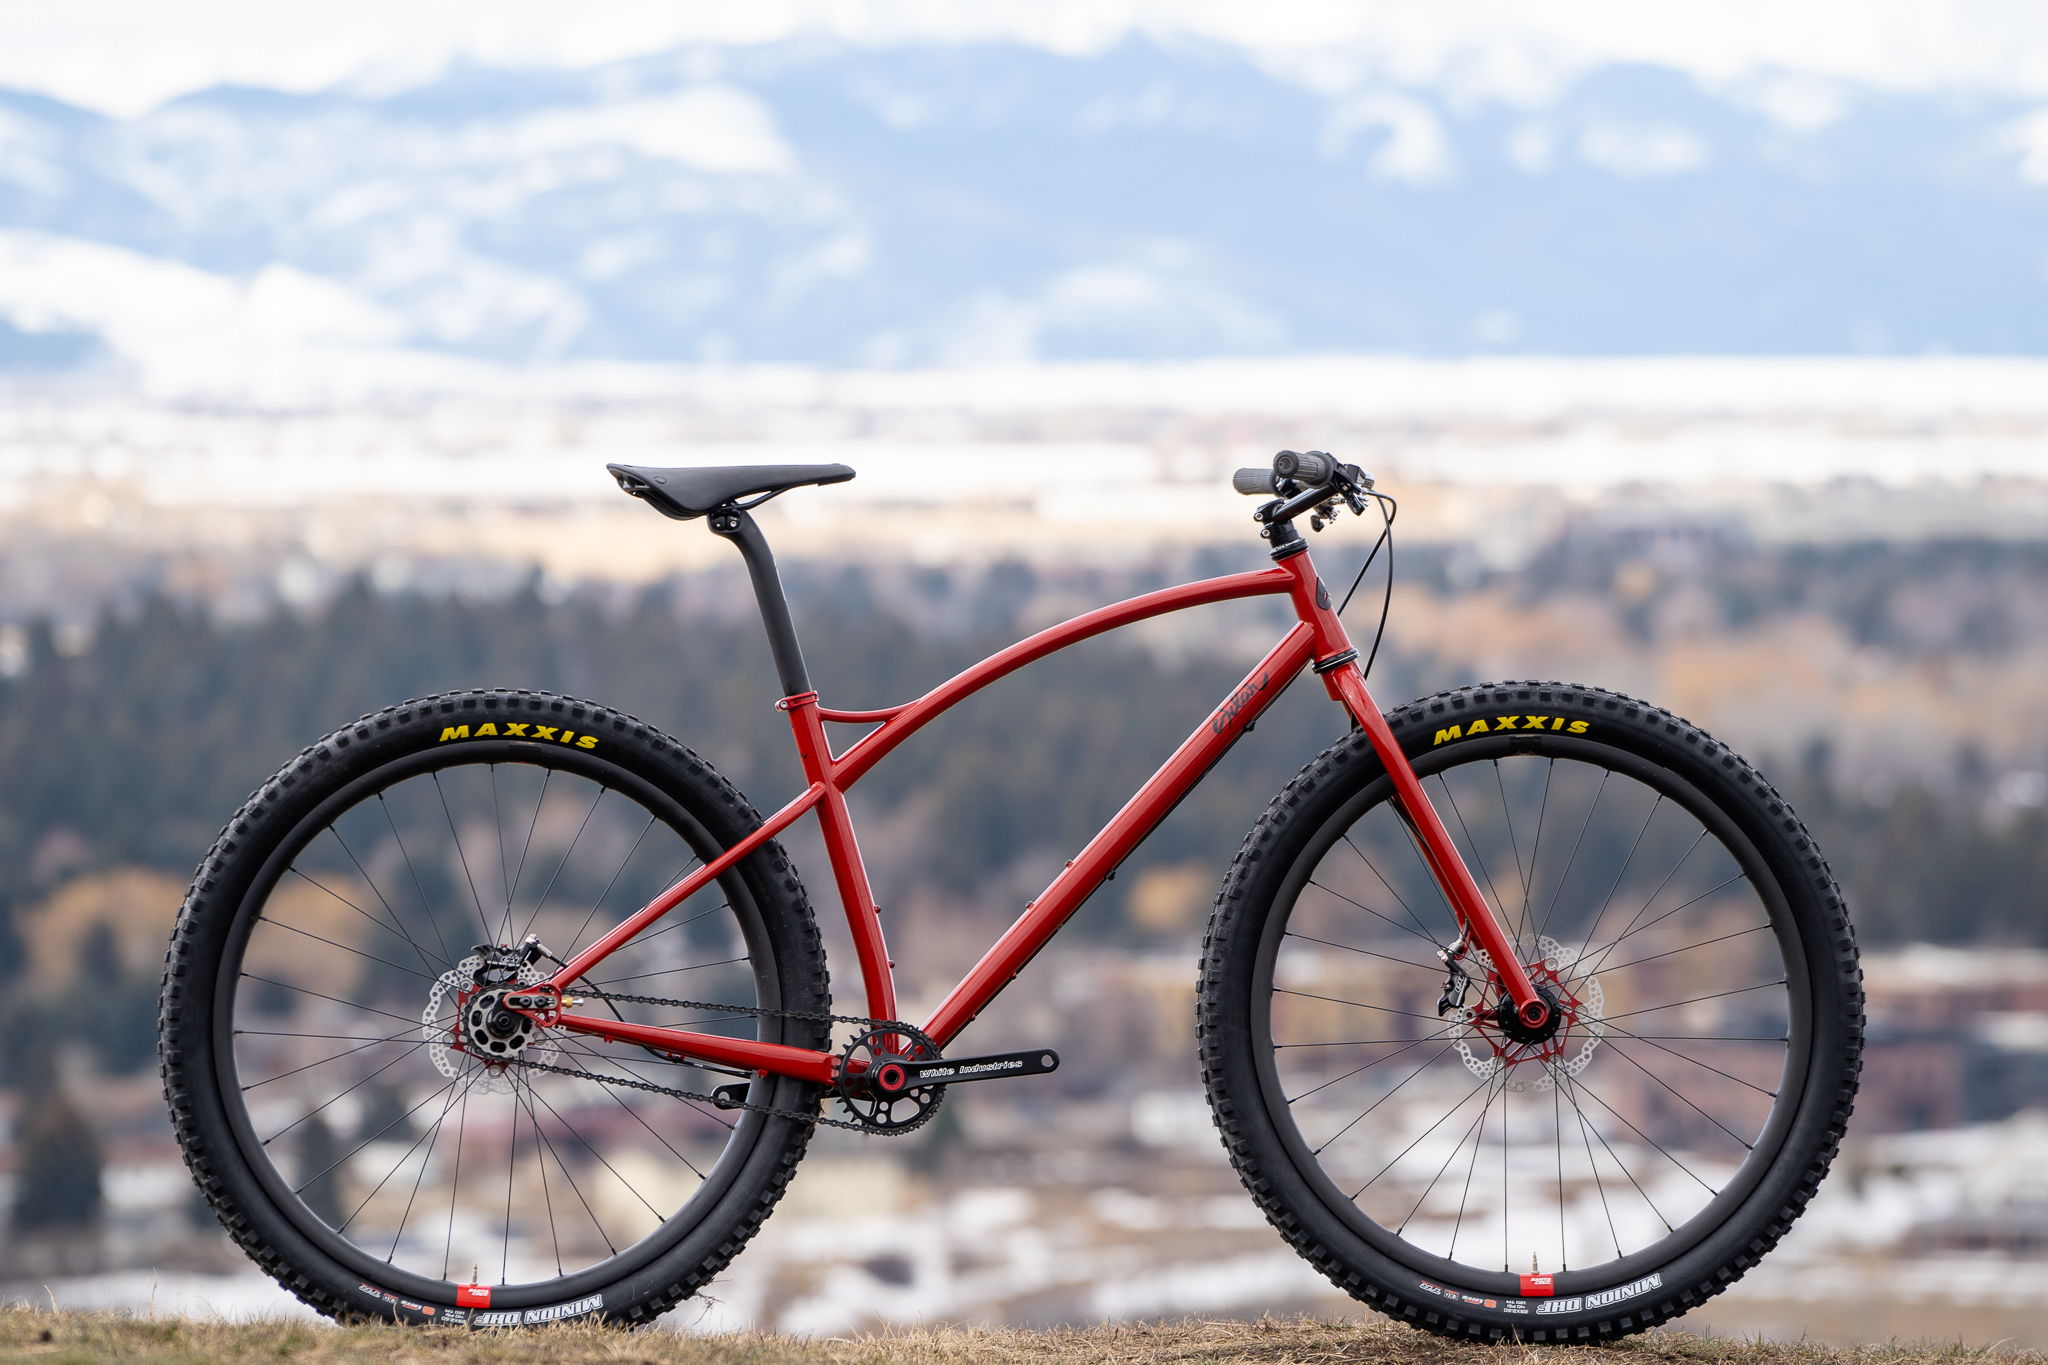 steel rigid mountain bike